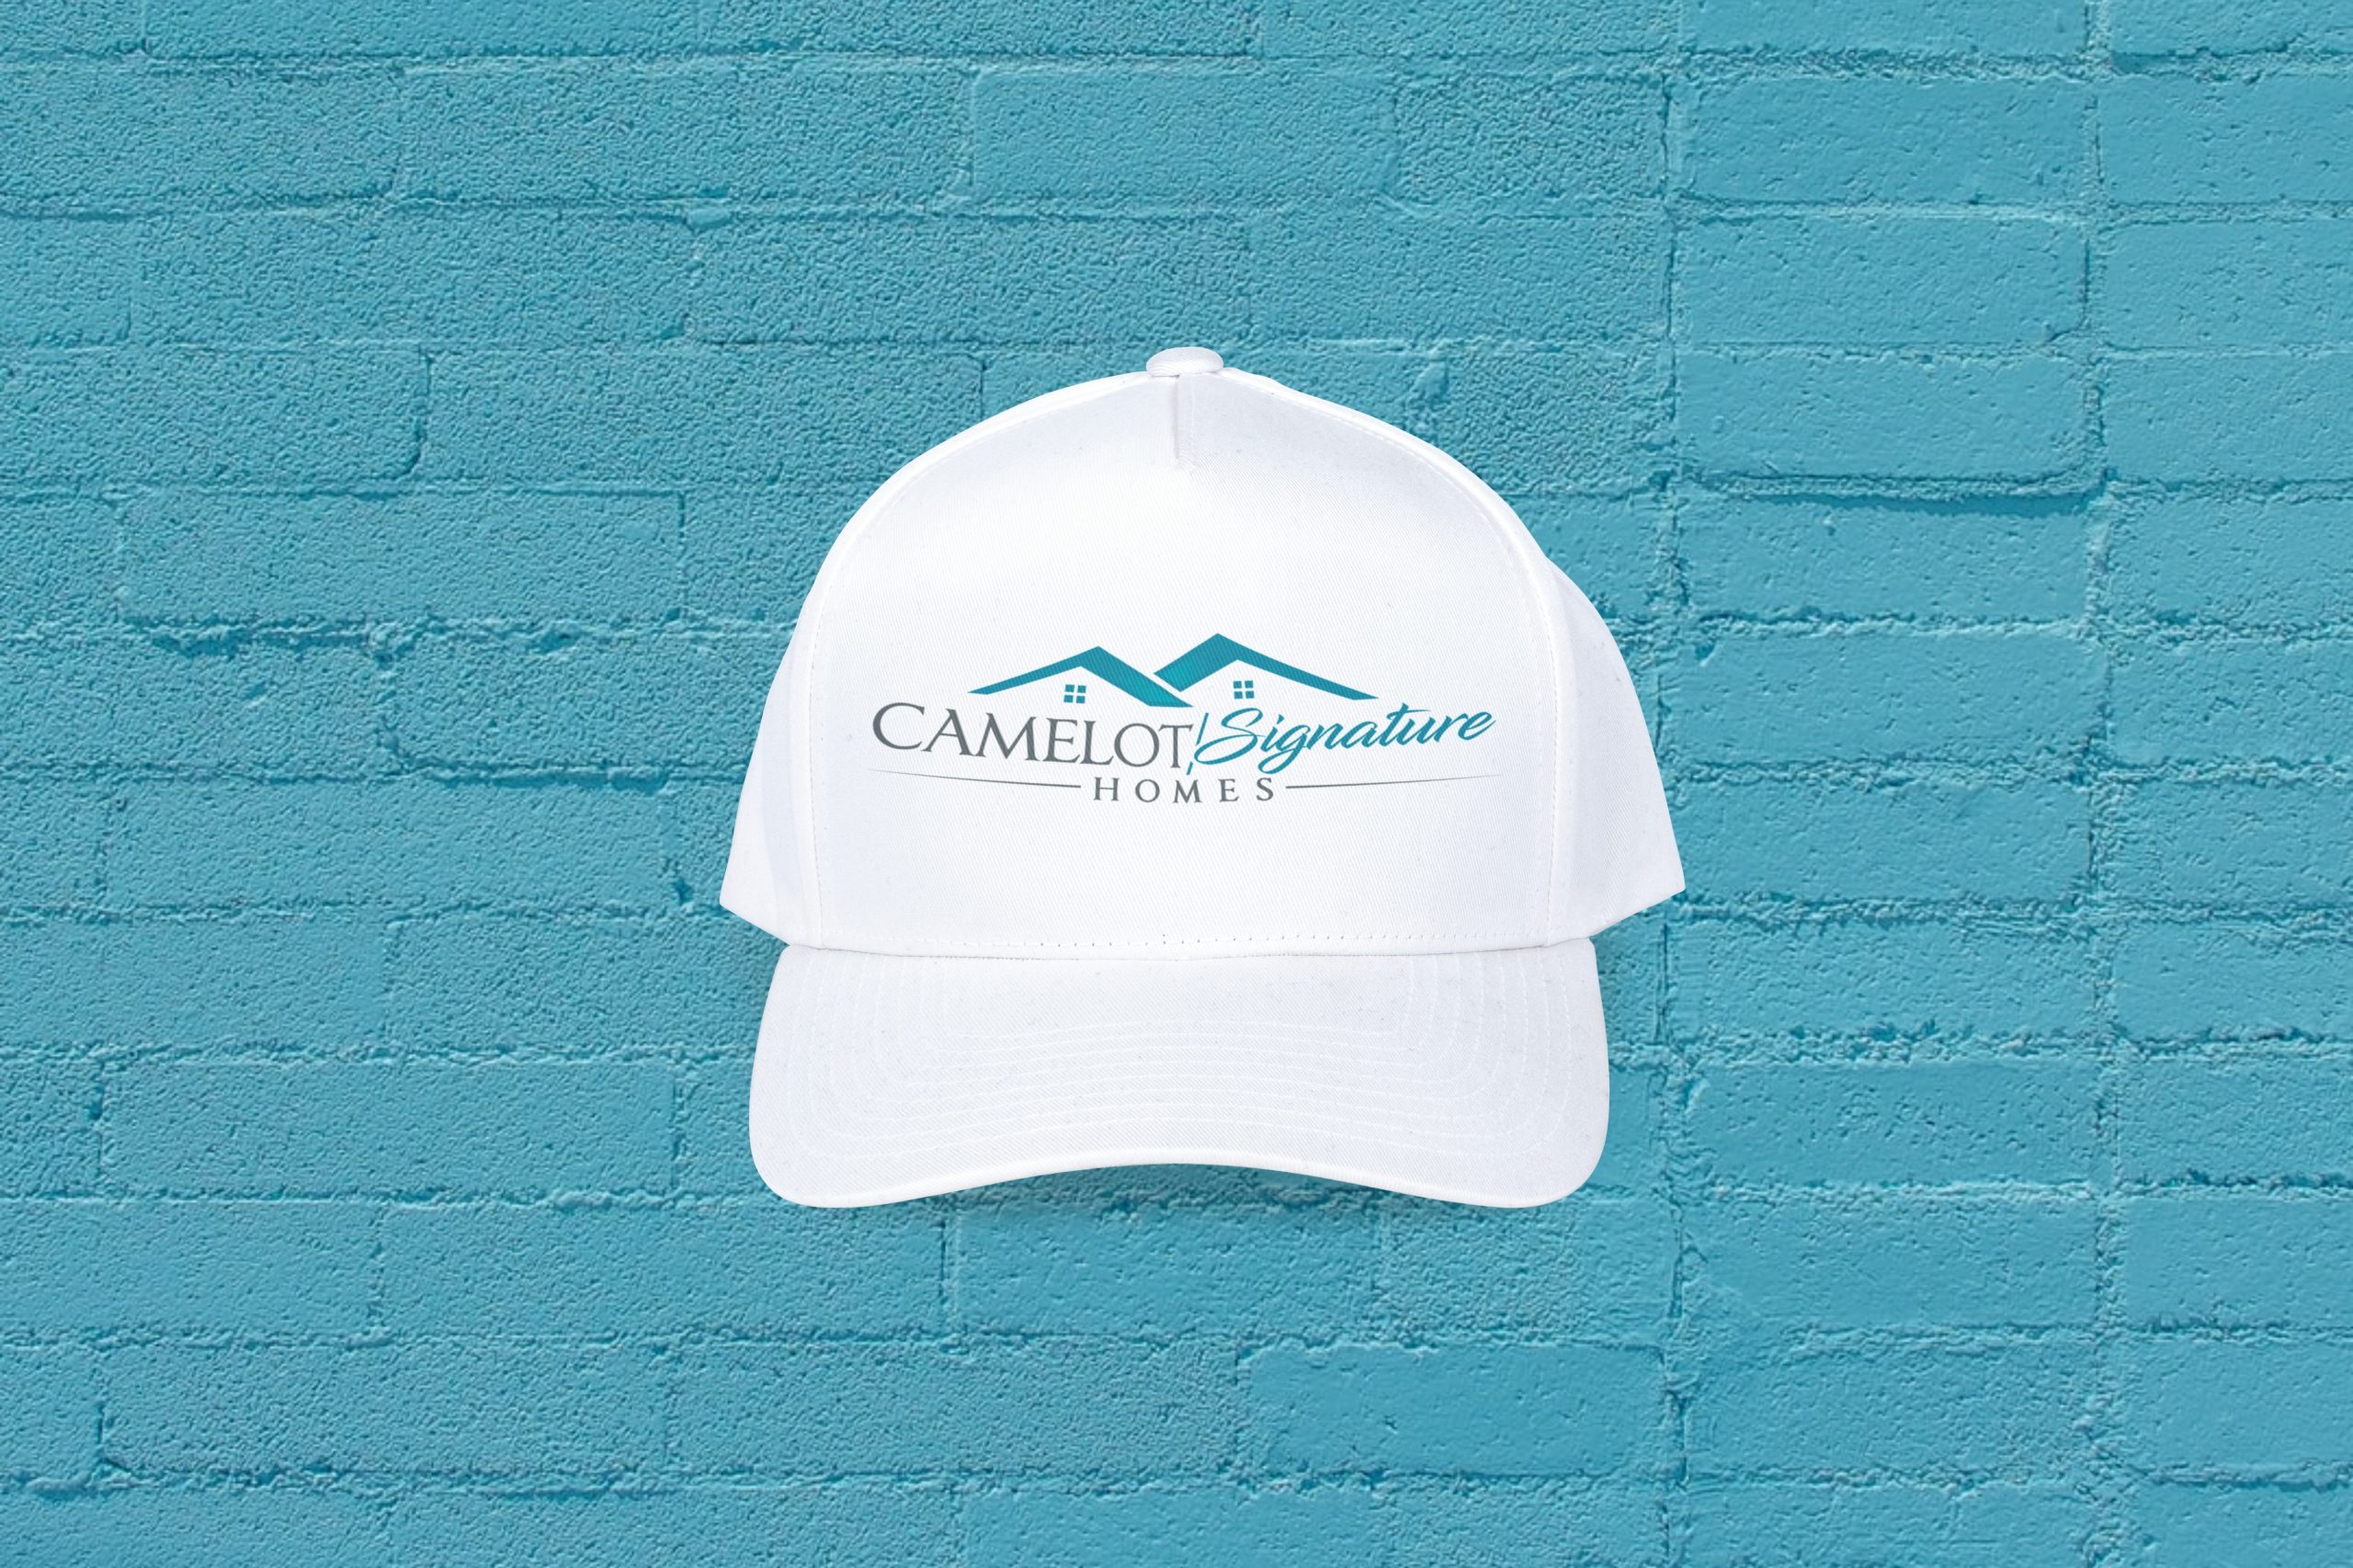 camelot-signature-homes-hat